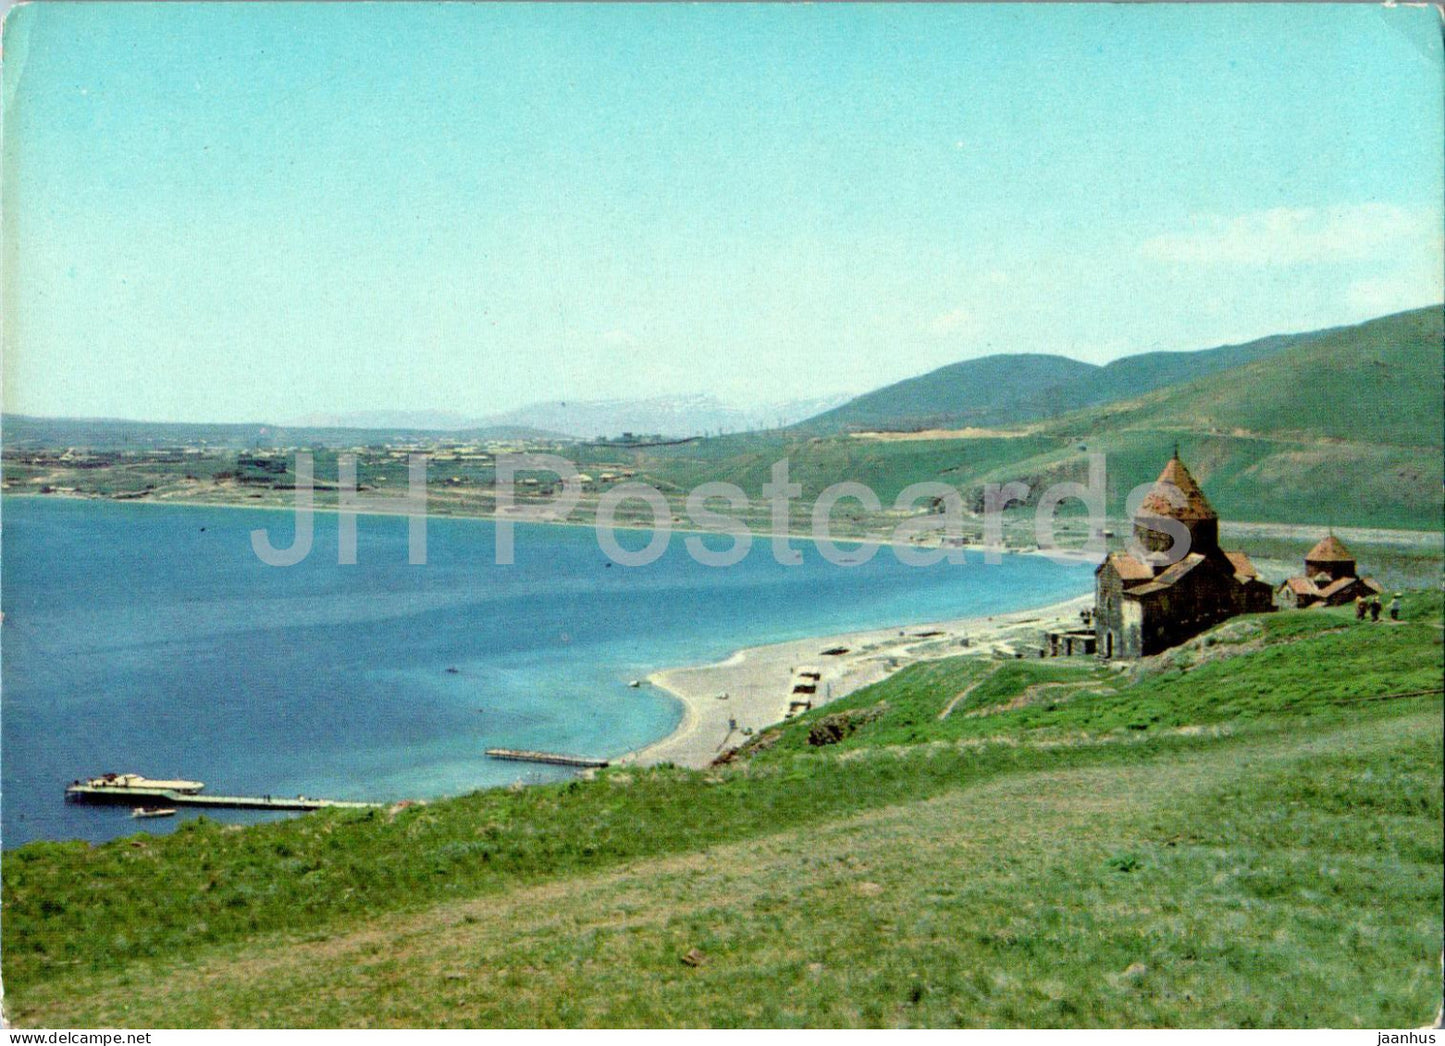 Lake Sevan - 1 - postal stationery - 1977 - Armenia USSR - unused - JH Postcards